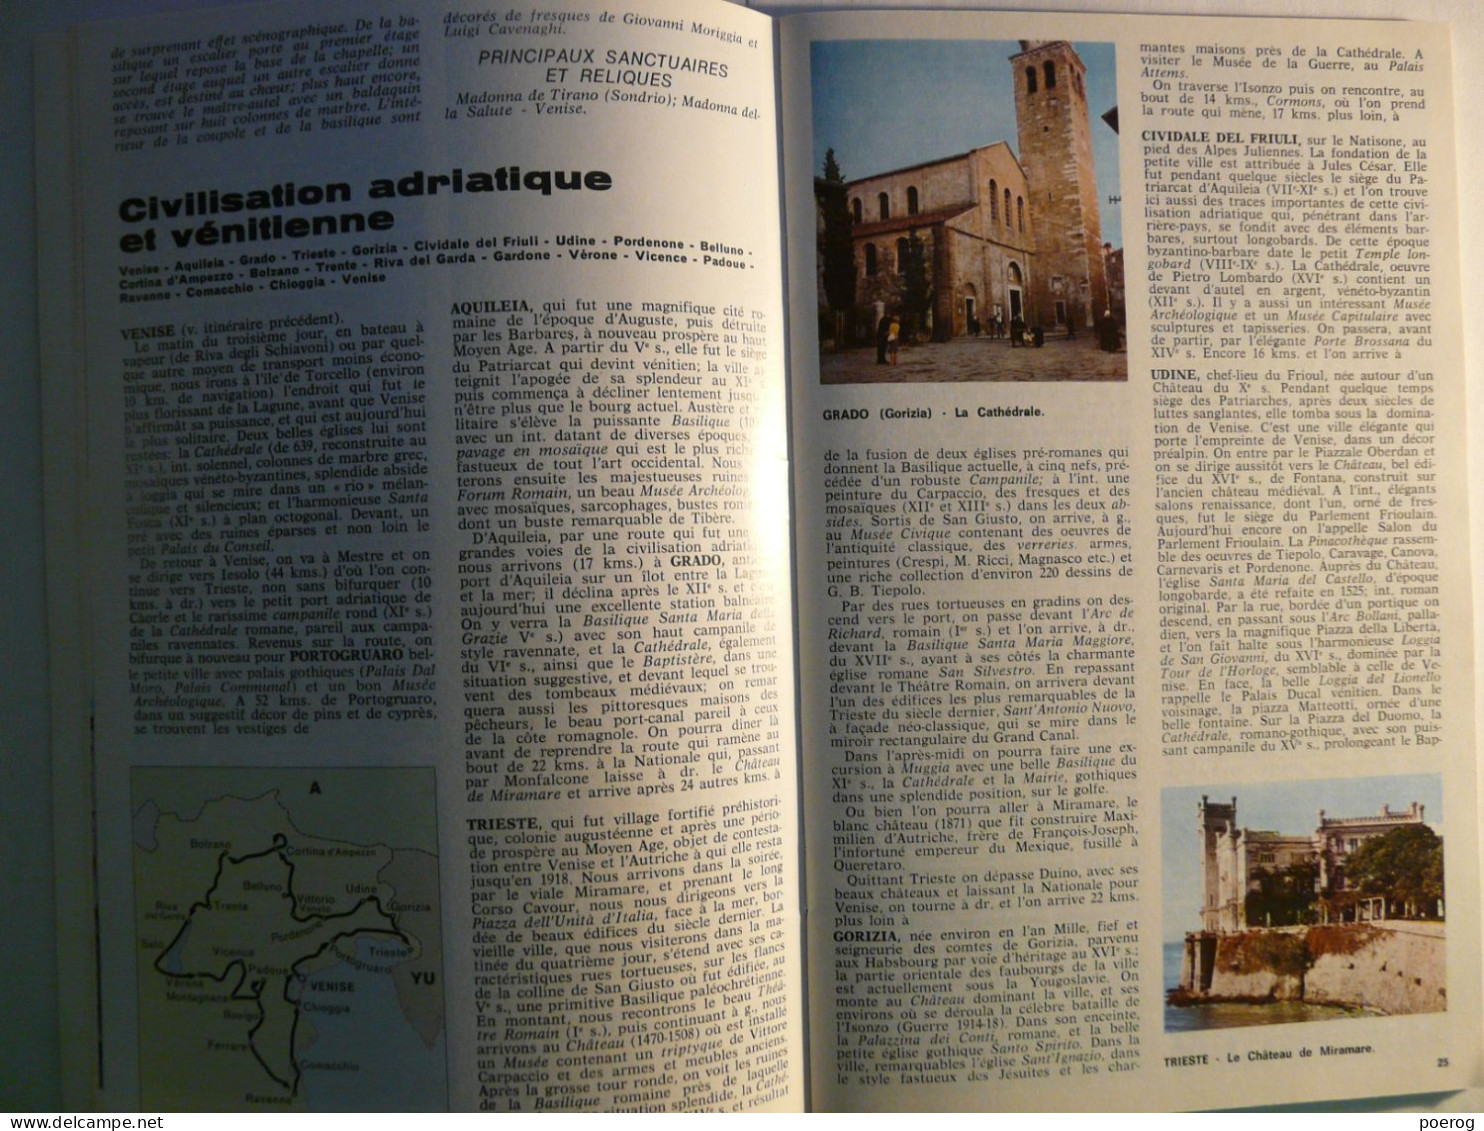 VOYAGE EN ITALIE POUR L' ANNEE SAINTE - 1974 - monographie Office National Italien du Tourisme